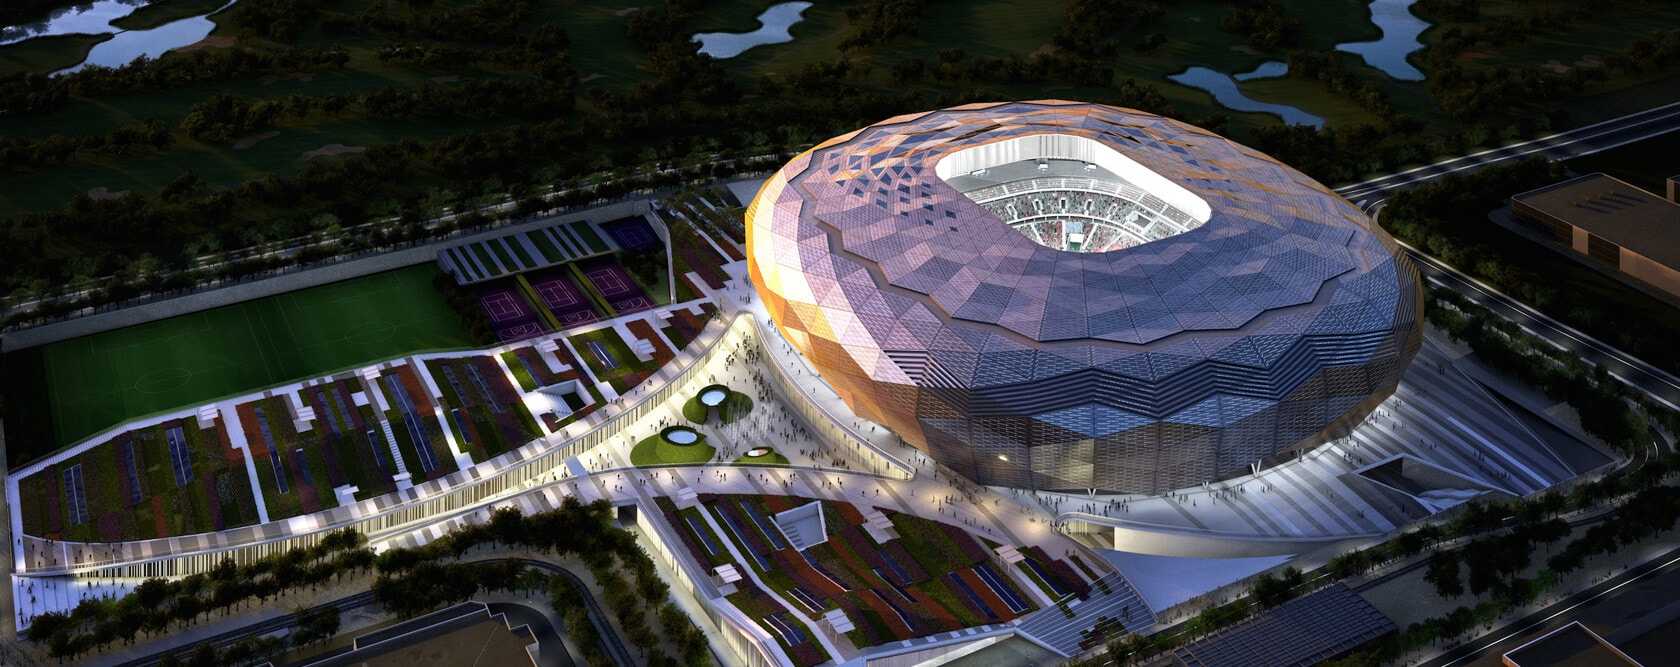 Qatar Foundation Stadium,Qatar Foundation Stadium In Qatar,Foundation Stadium In Qatar,qatar foundation stadium in qatar